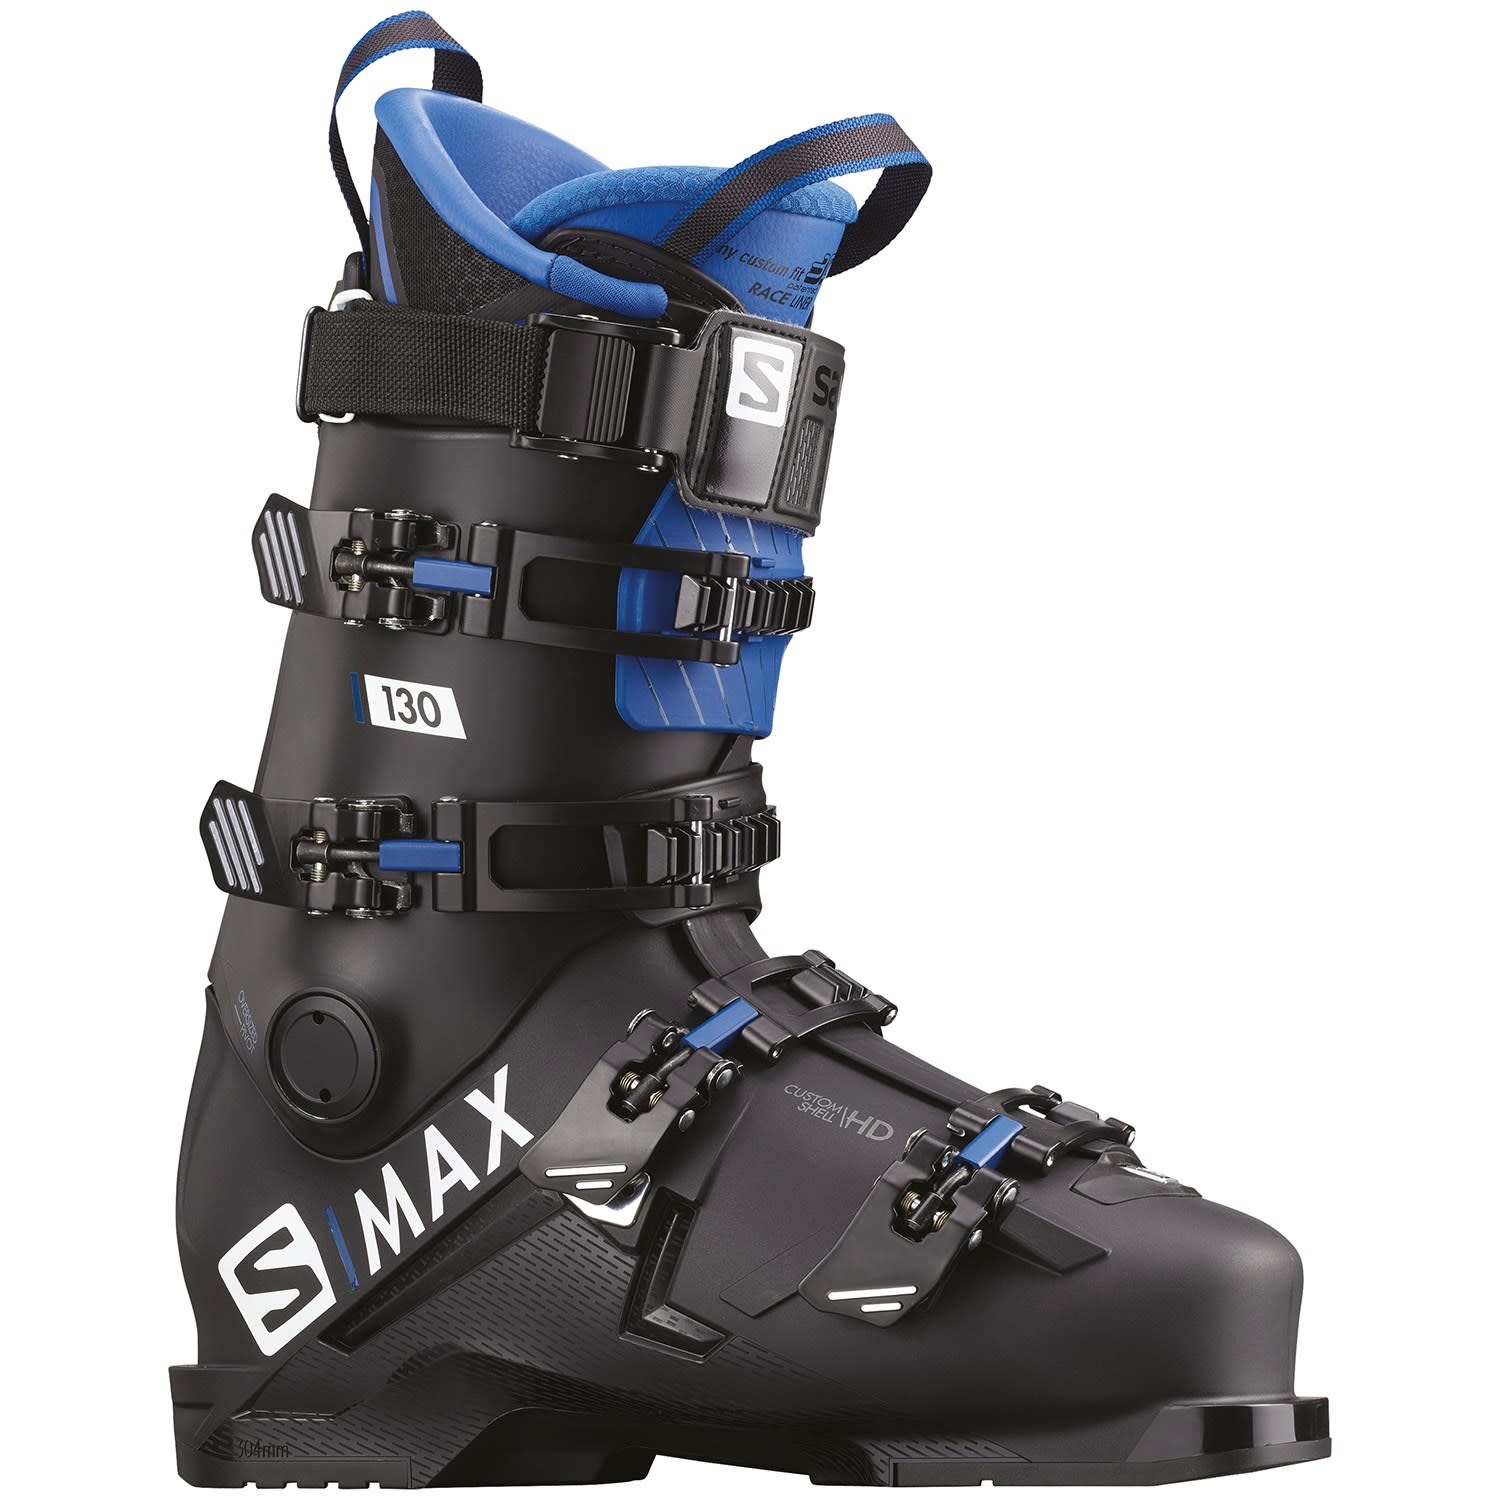 SALOMON Ski Boots S/MAX 130 (19/20) - Hut